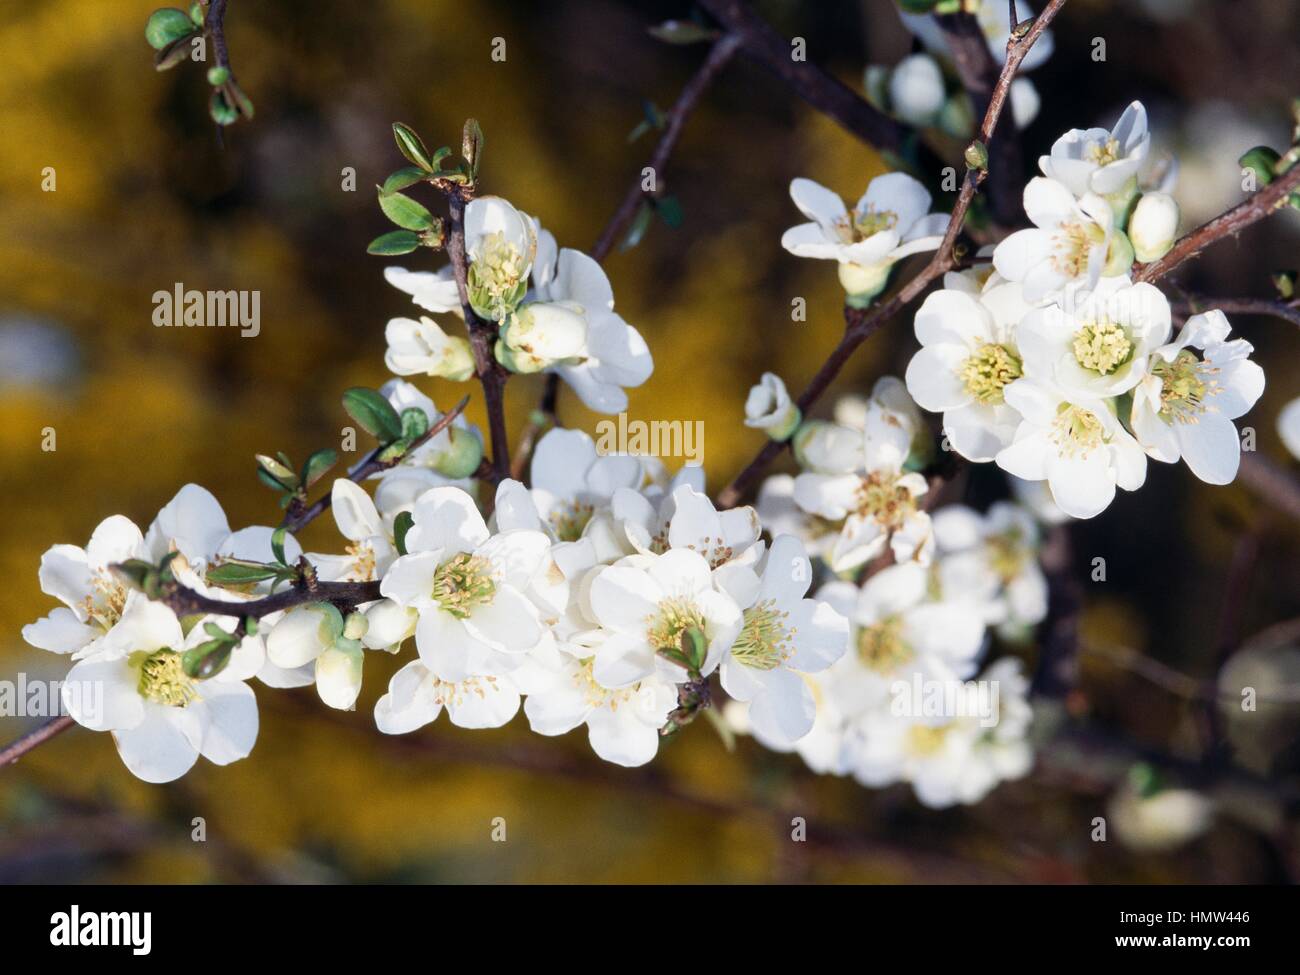 Flowering quince, blanc ou blanc cognassier japonais mugua mugua blanc (Chaenomeles), Rosaceae. Banque D'Images